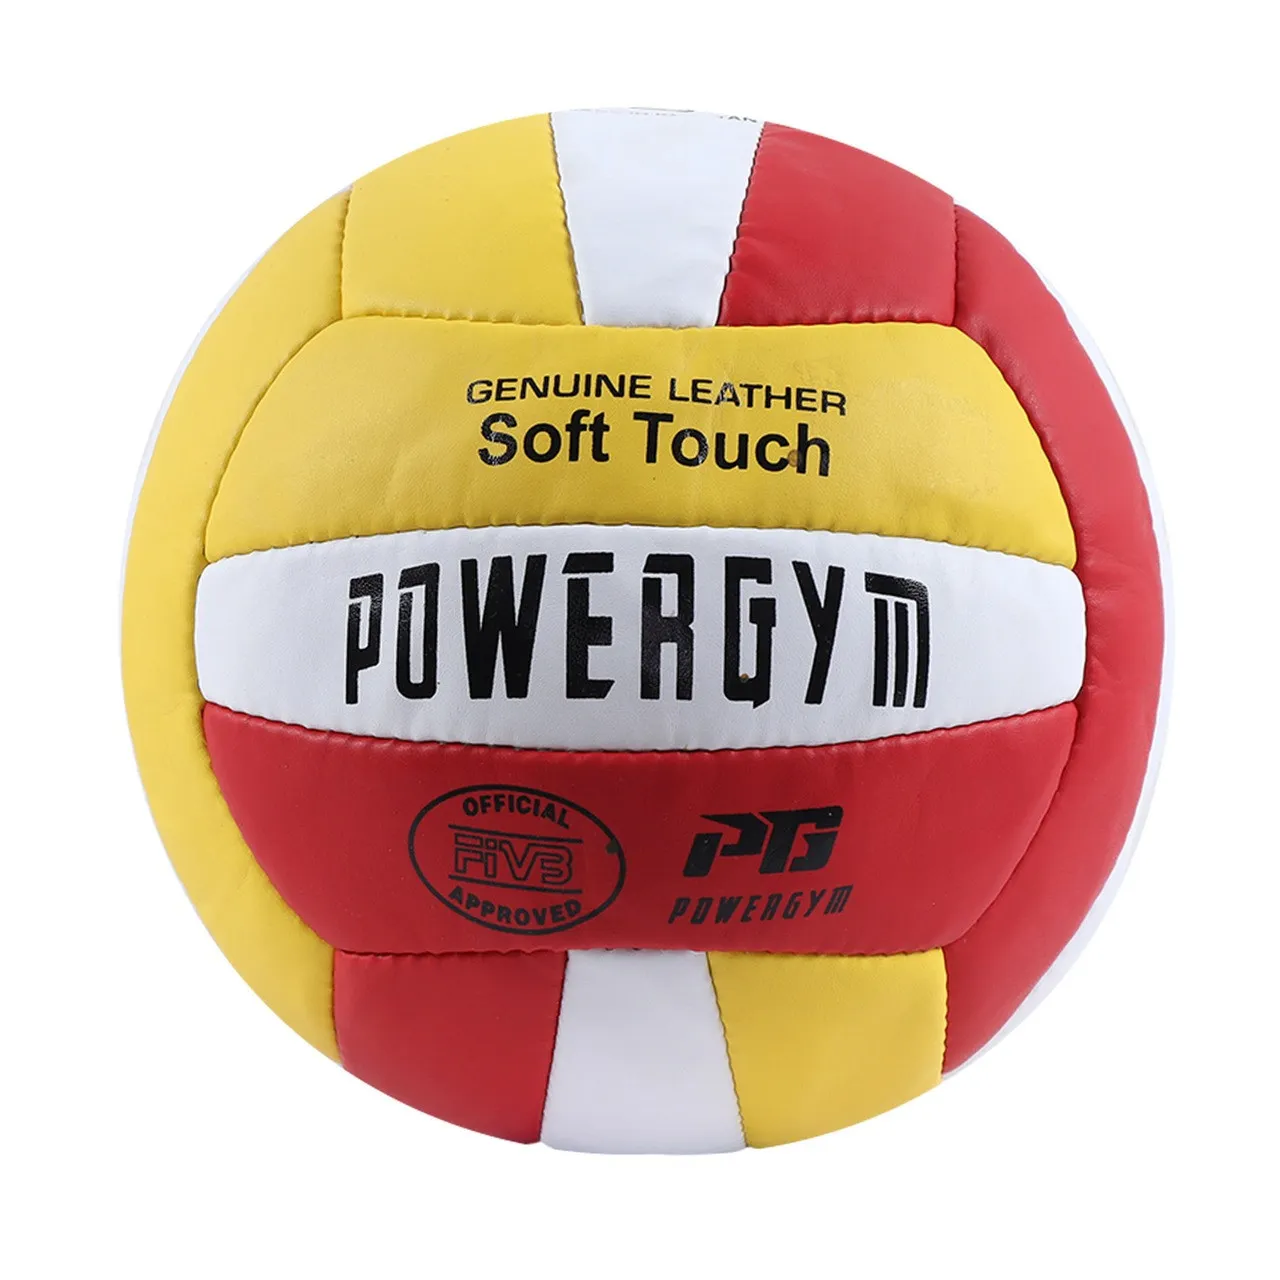 Voleybol'nyy myach Powergym Soft Touch
#1